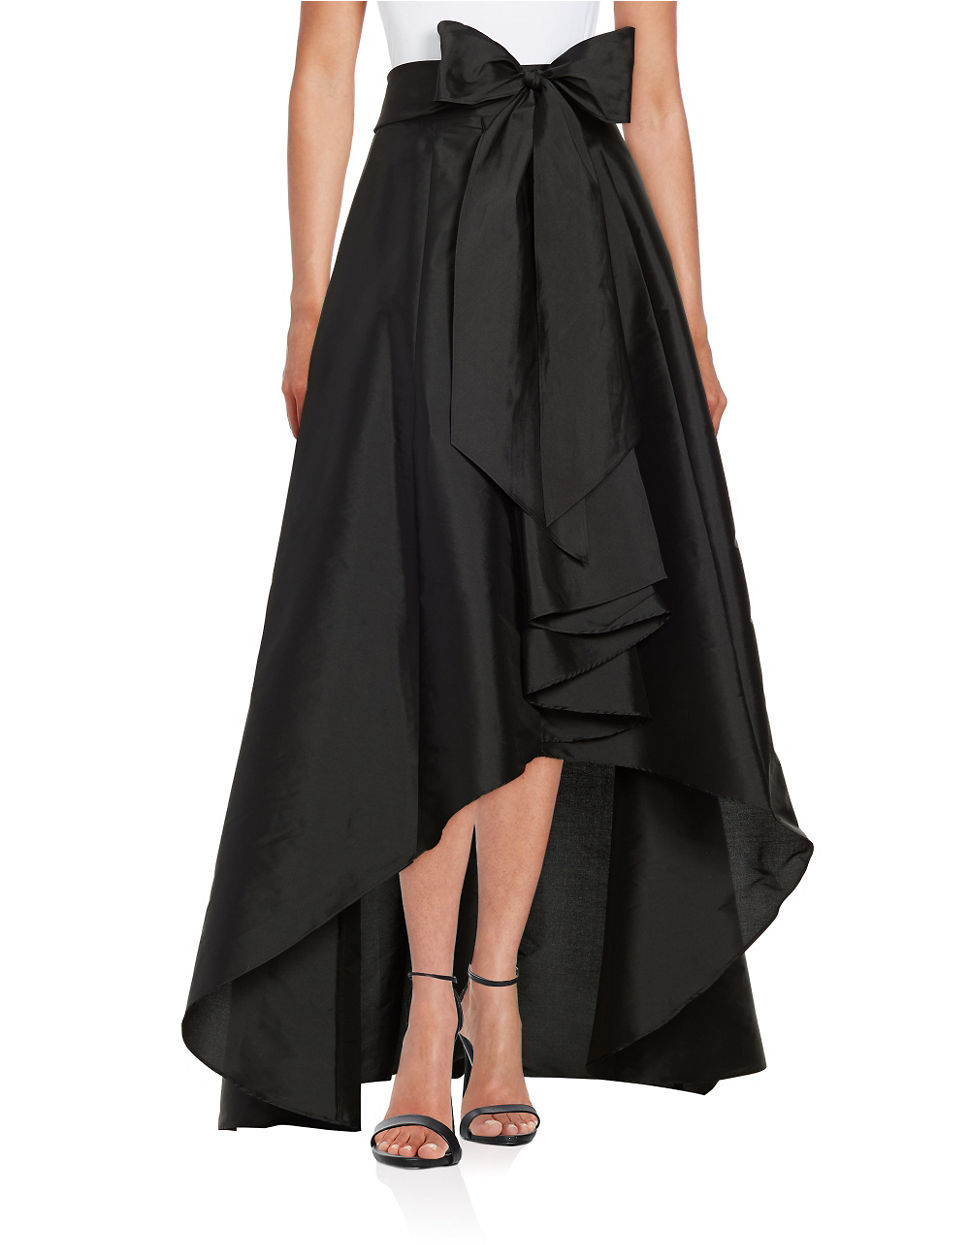 Lyst - Adrianna papell Hi-lo Ballroom Skirt in Black